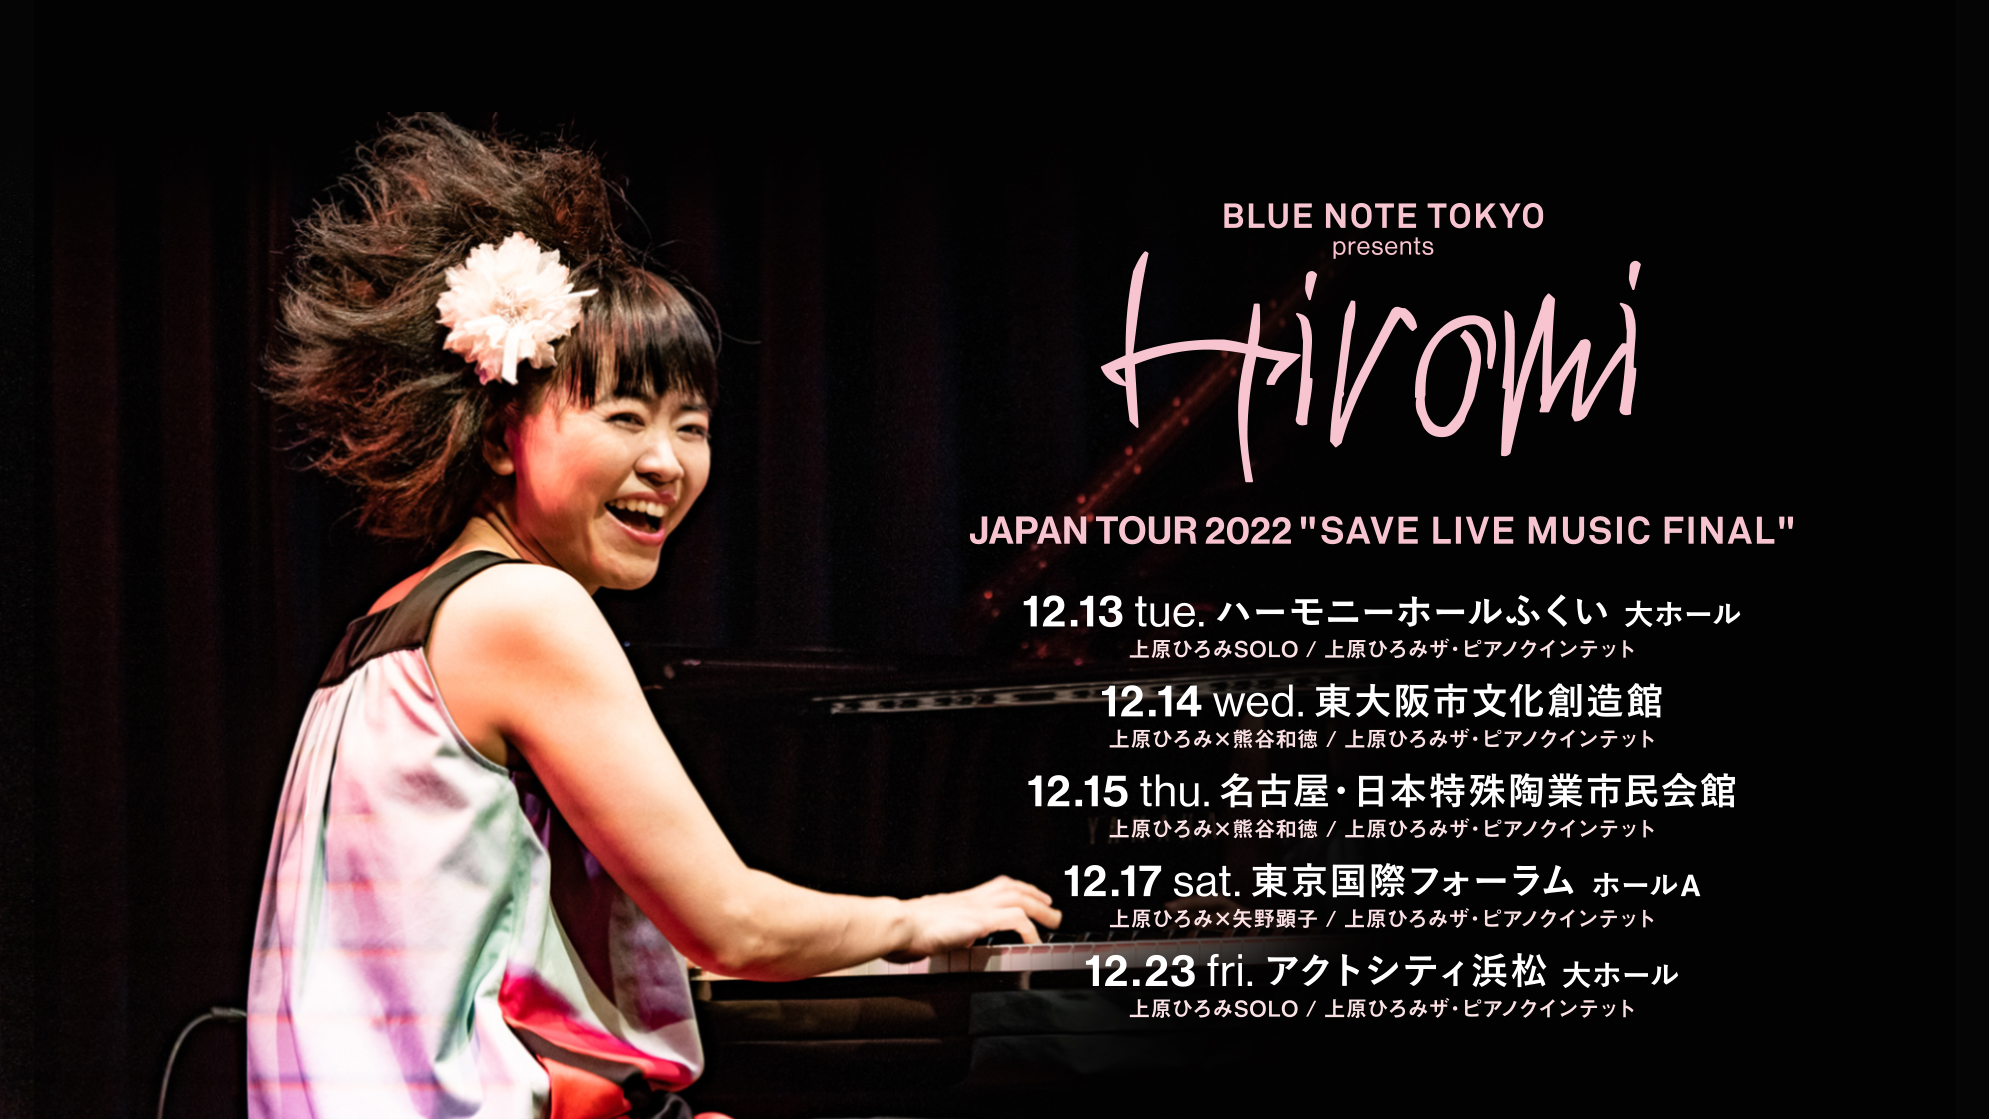 hiromi tour dates